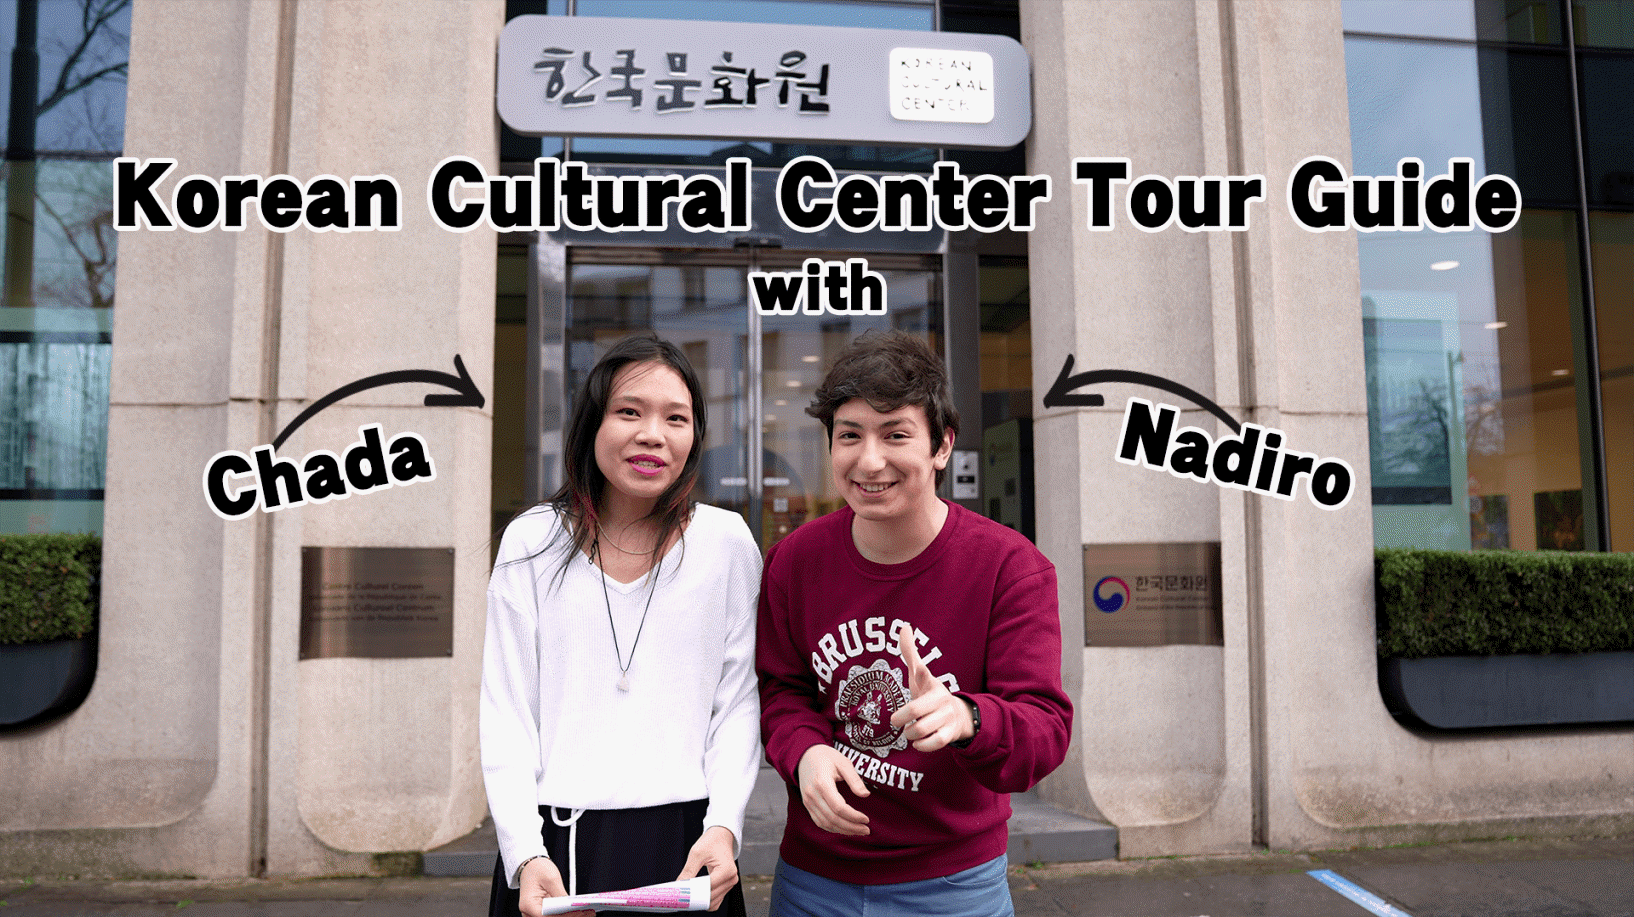 Have you ever visited Korean Cultural Center Brussels?